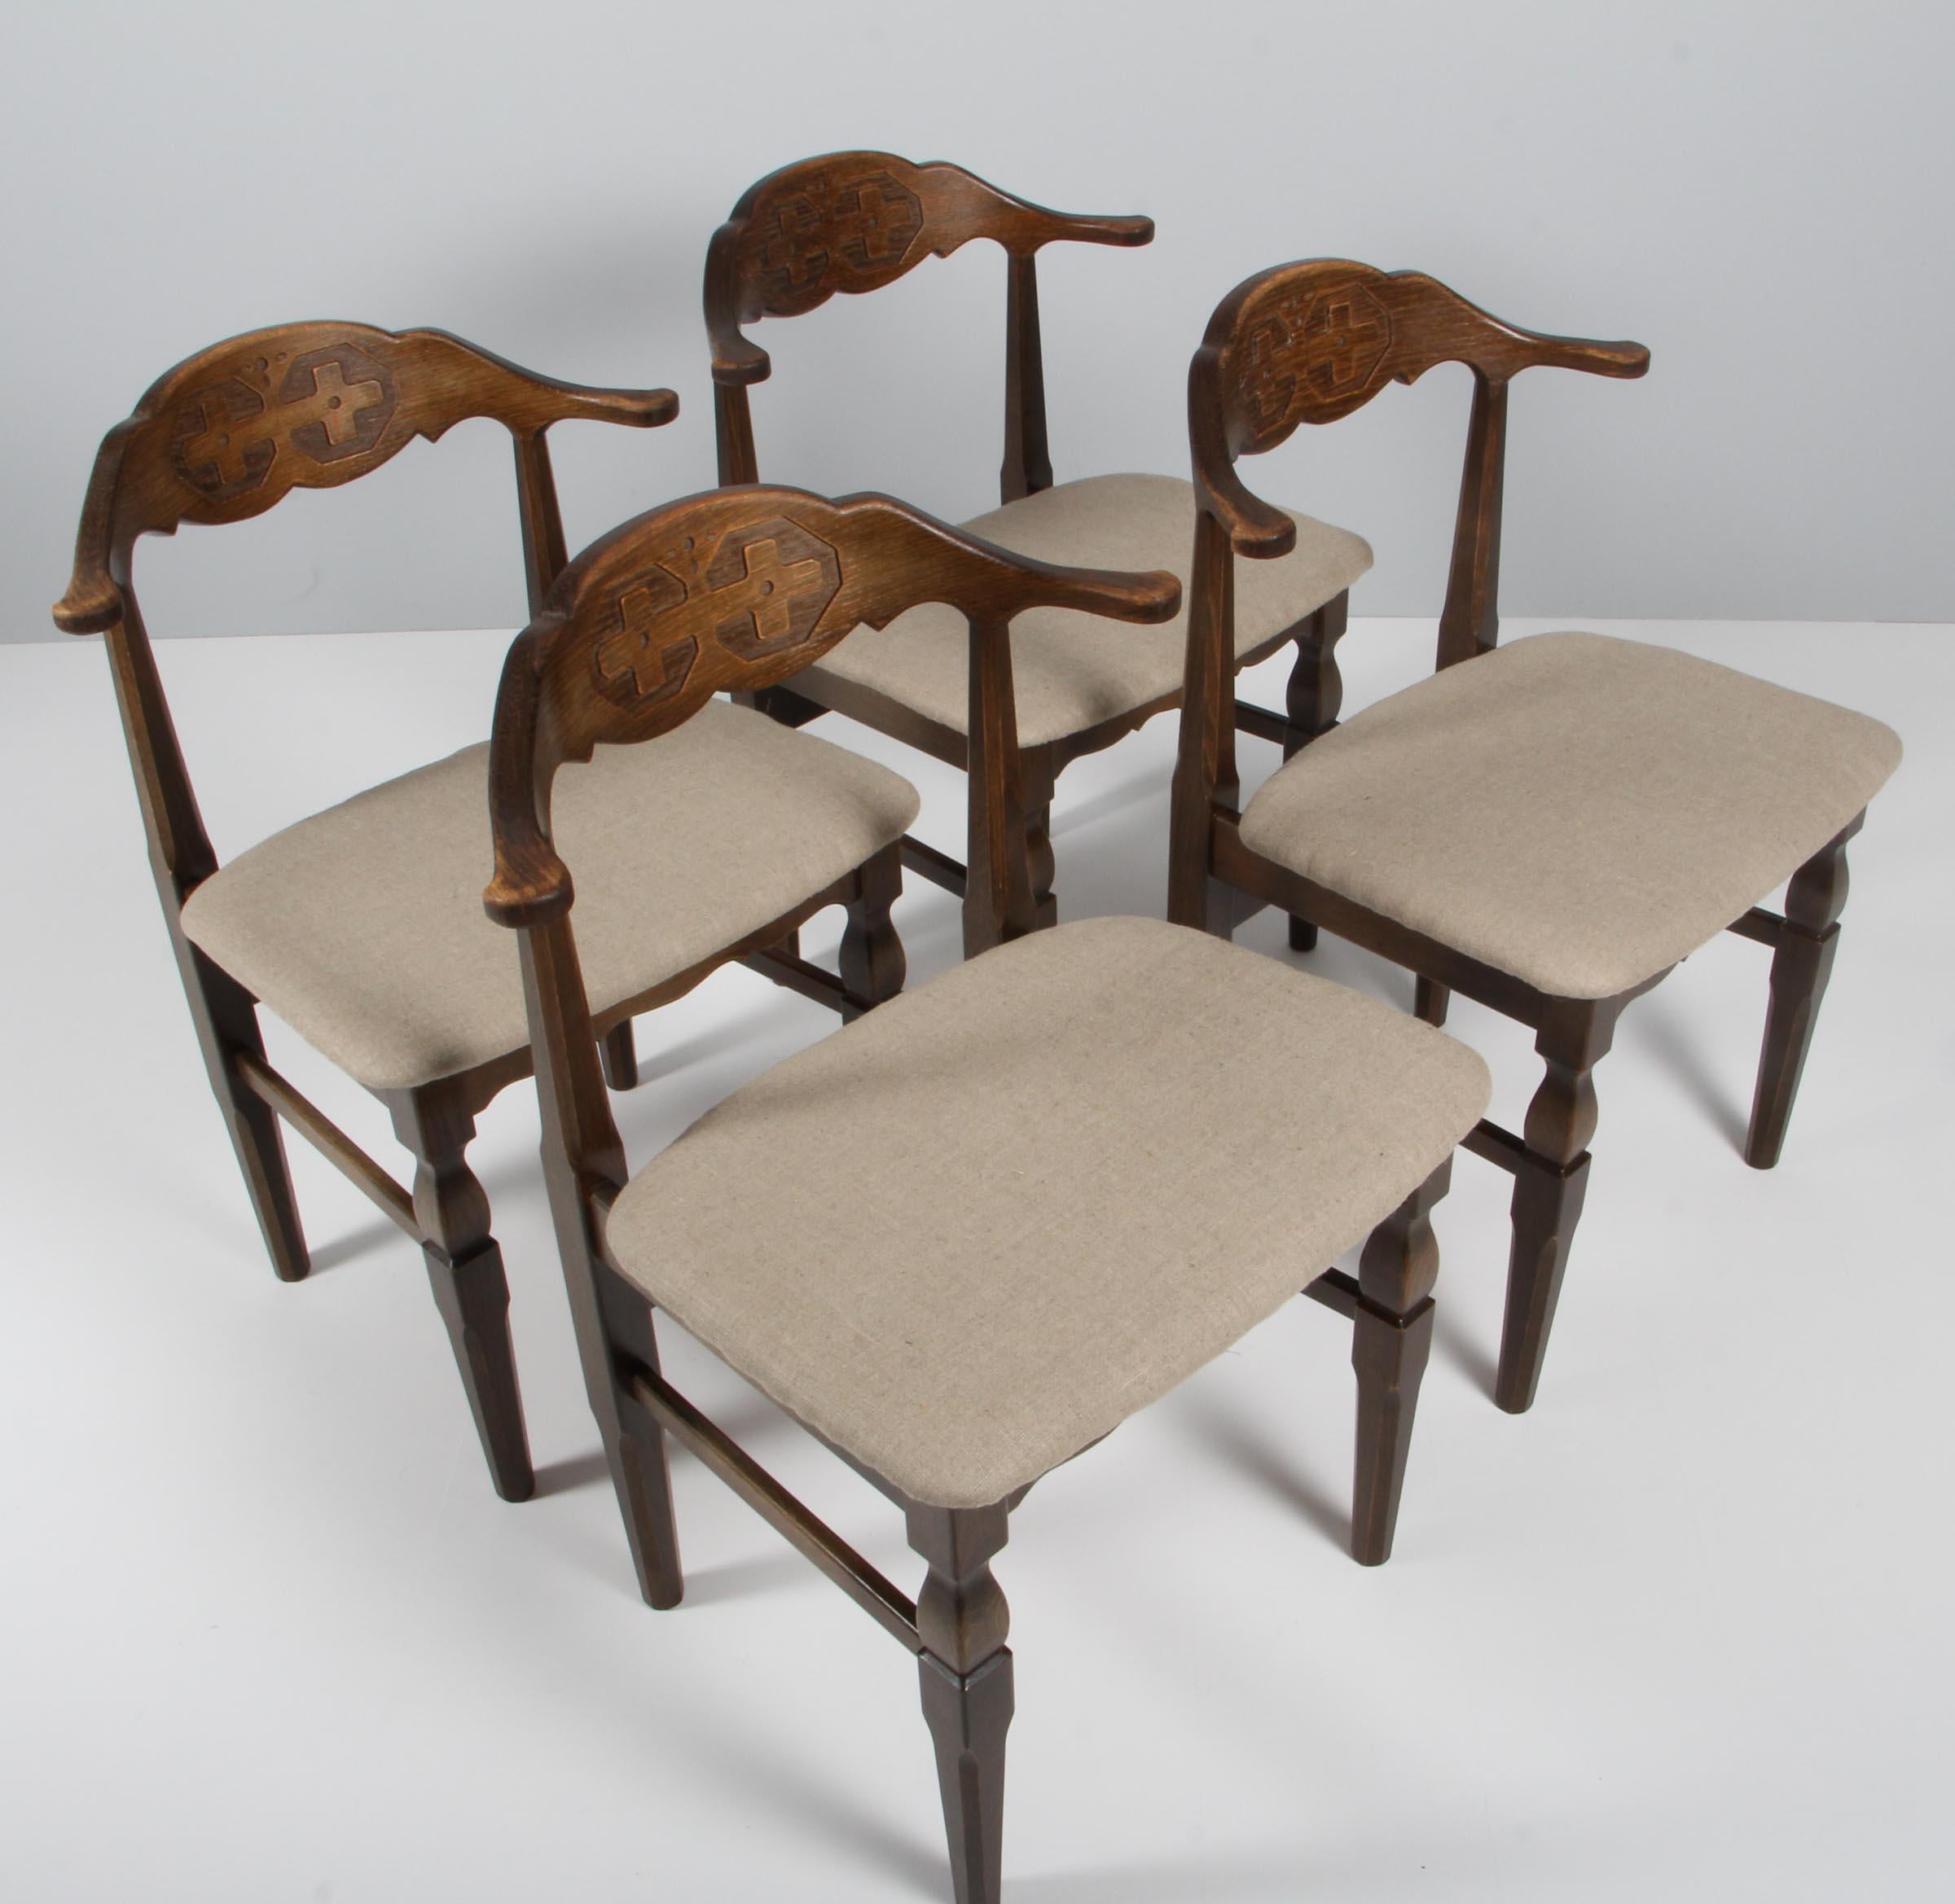 Ensemble de remarquables chaises de salle à manger par Henning Kjærnulf, en chêne teinté et nouvellement tapissées de toile. 

Un design rafraîchissant où le baroque audacieux se marie bien avec le modernisme du milieu du siècle.

Modèle : dans